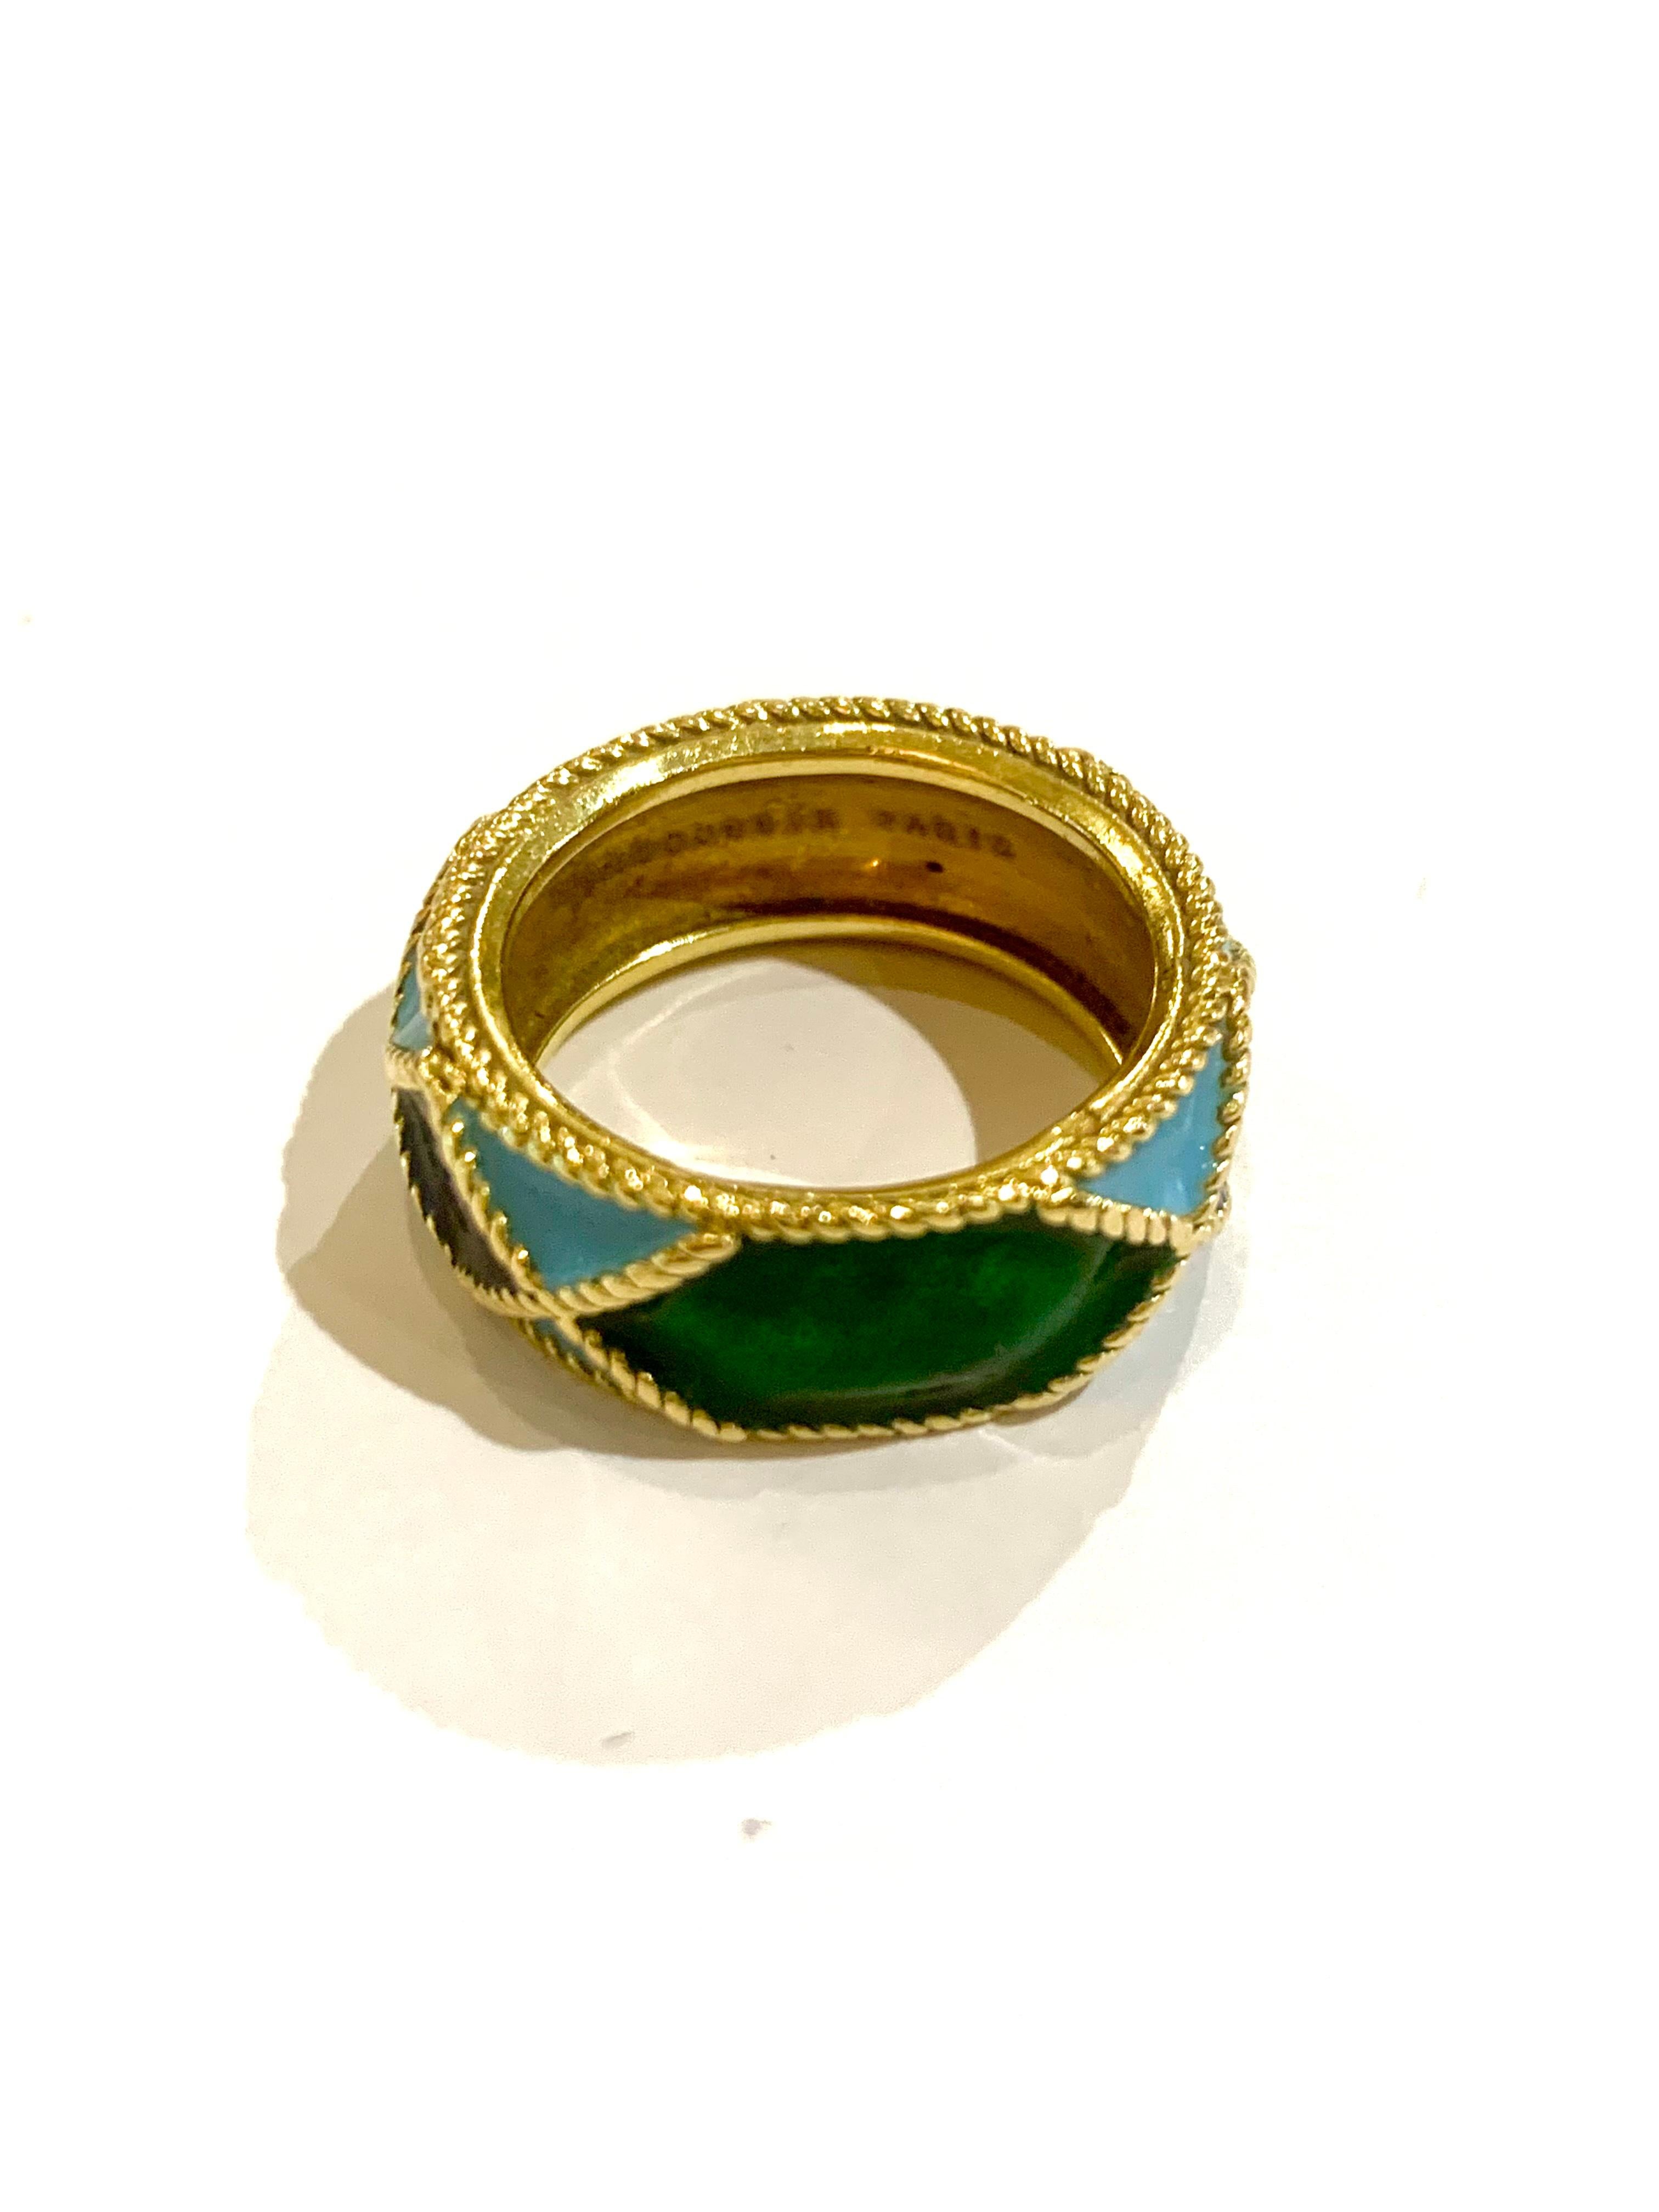 Bague vintage en or jaune signée Mauboussin Paris et numérotée, l'anneau complet émaillé dans des tons de bleu et de vert dans un fin motif de corde.

Signée Mauboussin Paris et numérotée.

Dimensions : 8,13 x 2,38 mm (0,320 x 0,094 pouces) : 8,13 x